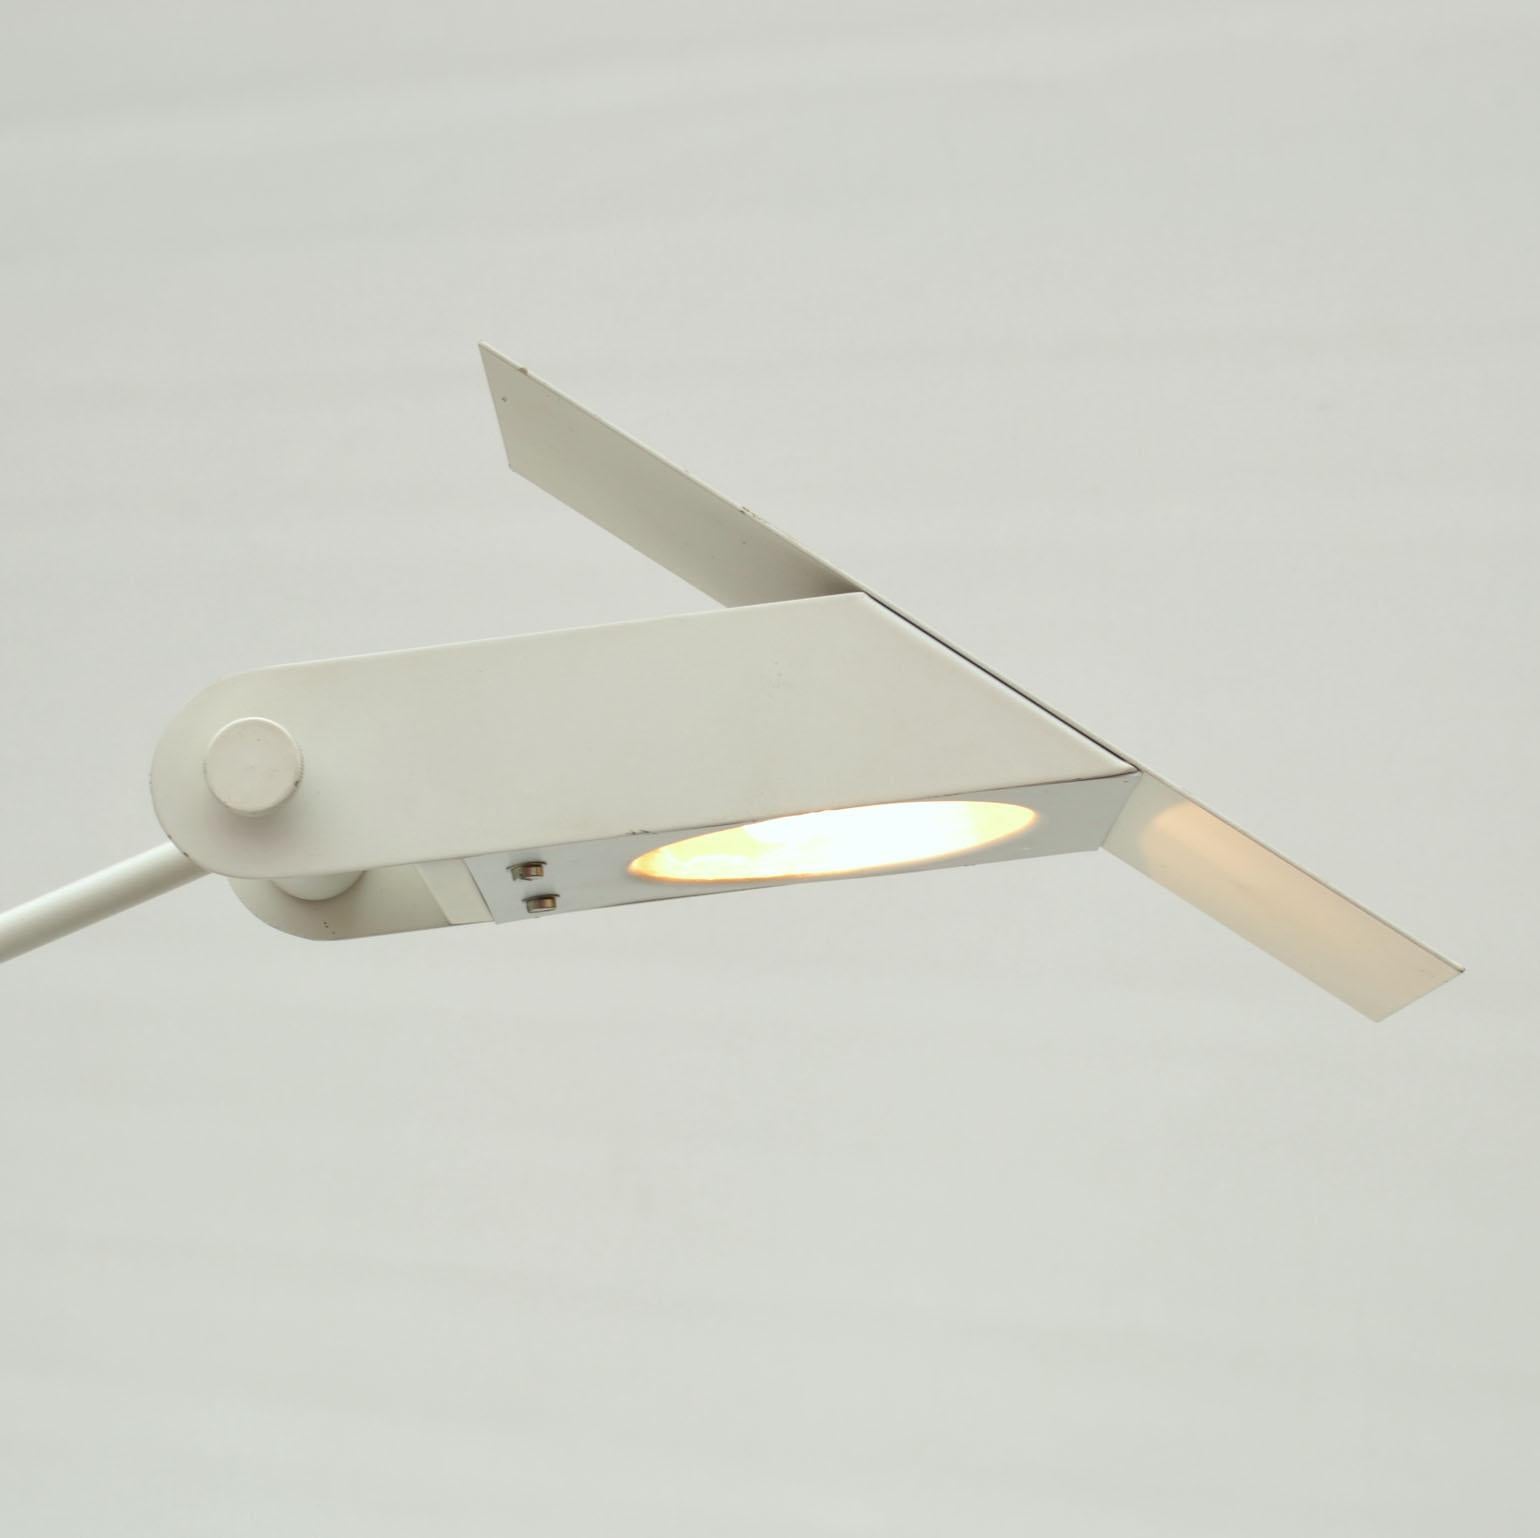 Minimalistische Stehleuchte aus weißem Metall mit verstellbarem Arm, der auf einem Zylindersockel ausbalanciert wird, und Halogenlichtquelle, zugeschrieben Rico & Rosemarie Baltensweiler, Schweiz 1960-70er Jahre. Die Lampe balanciert auf einem